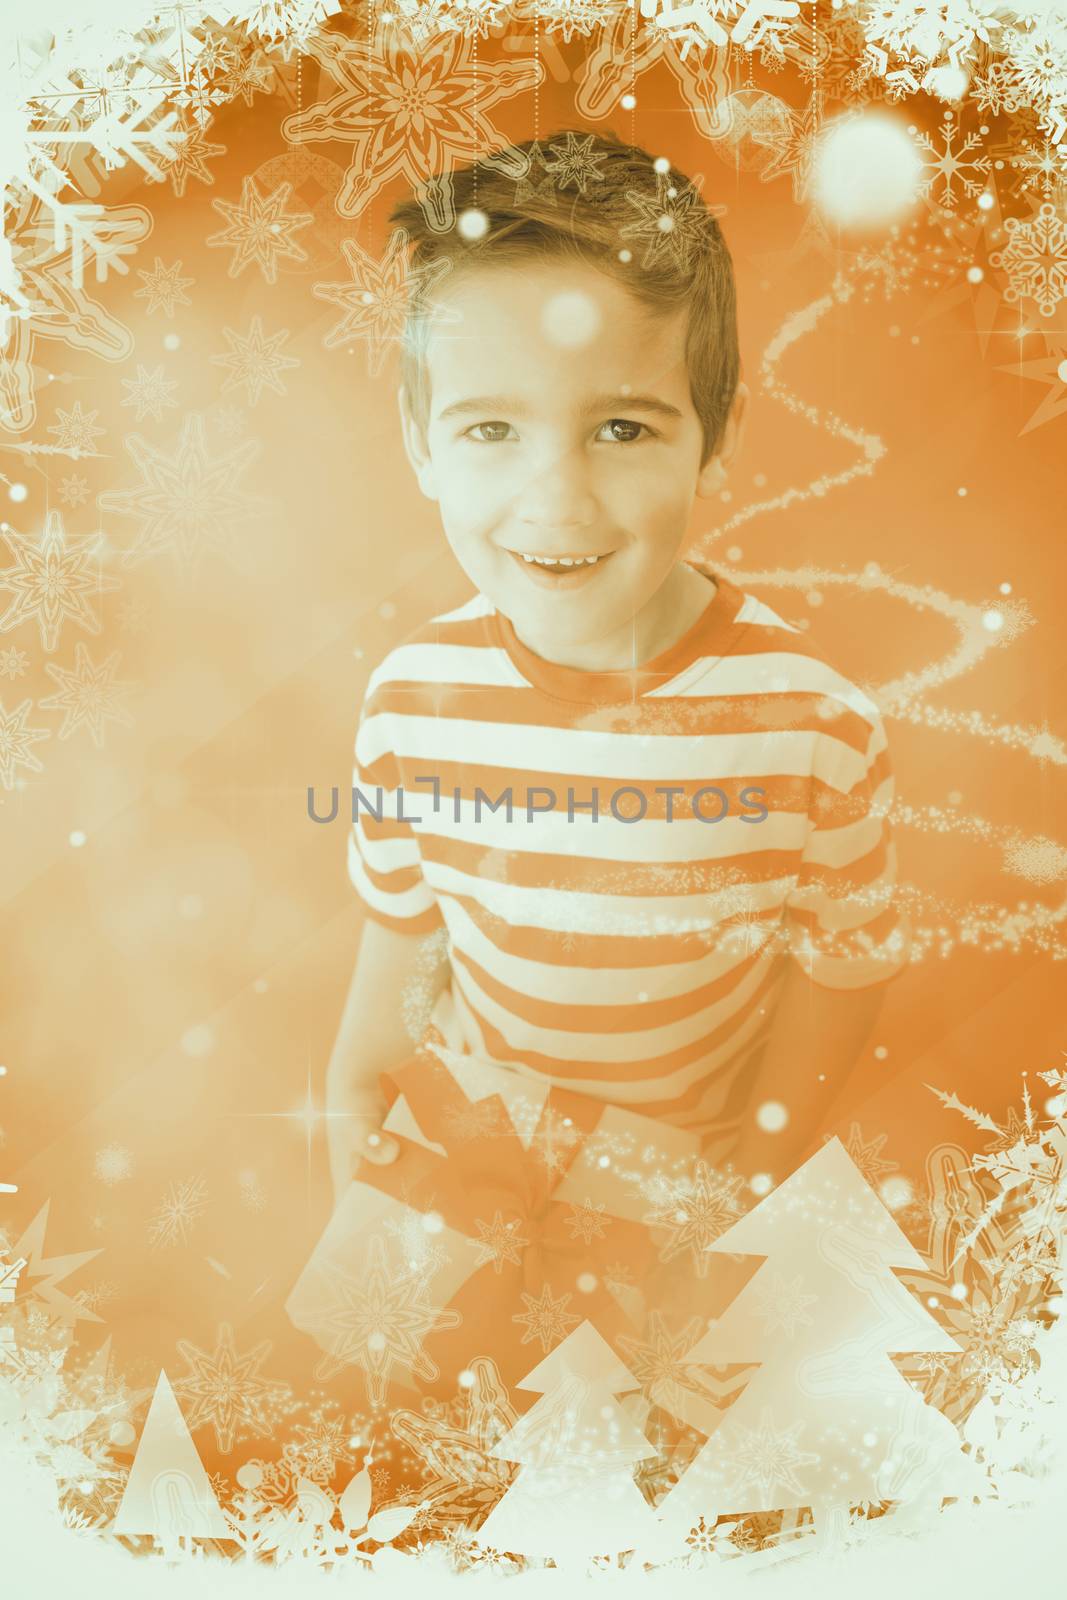 Festive little boy holding a gift against glittering christmas tree design